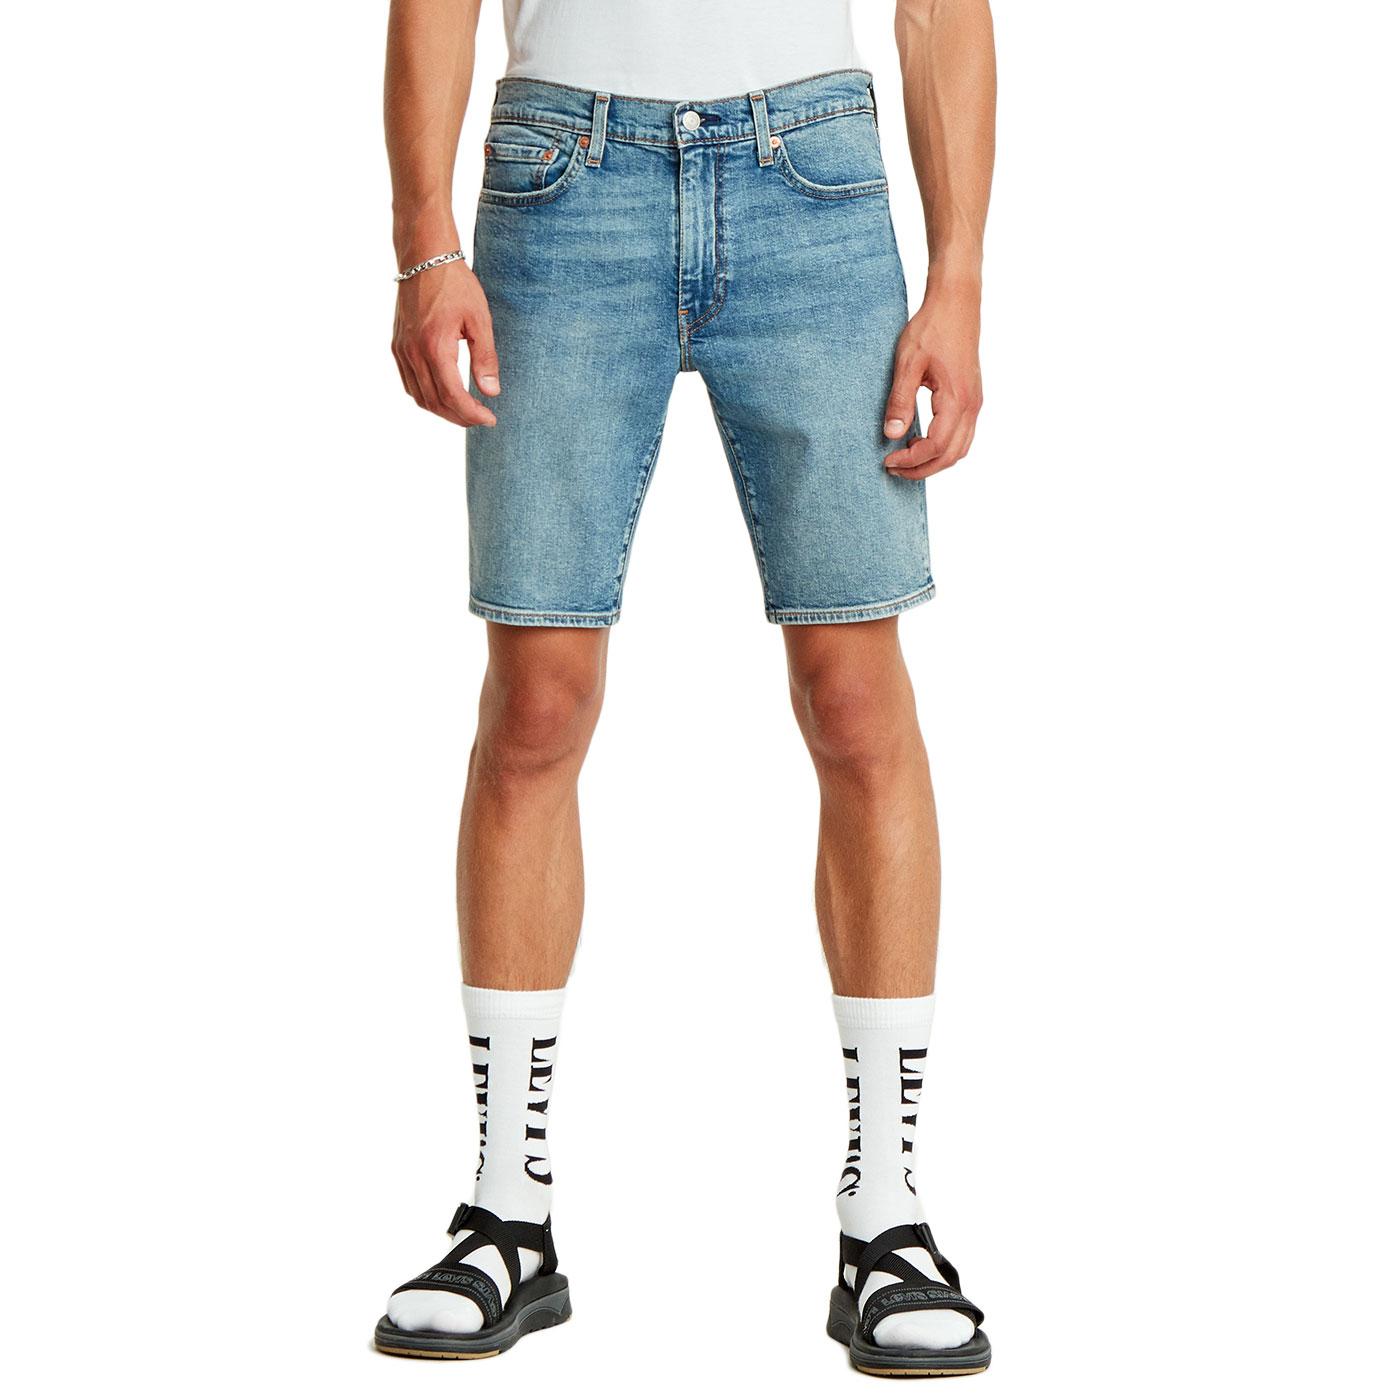 LEVI'S 511 Retro Slim Hemmed Denim Shorts in Baguette Short